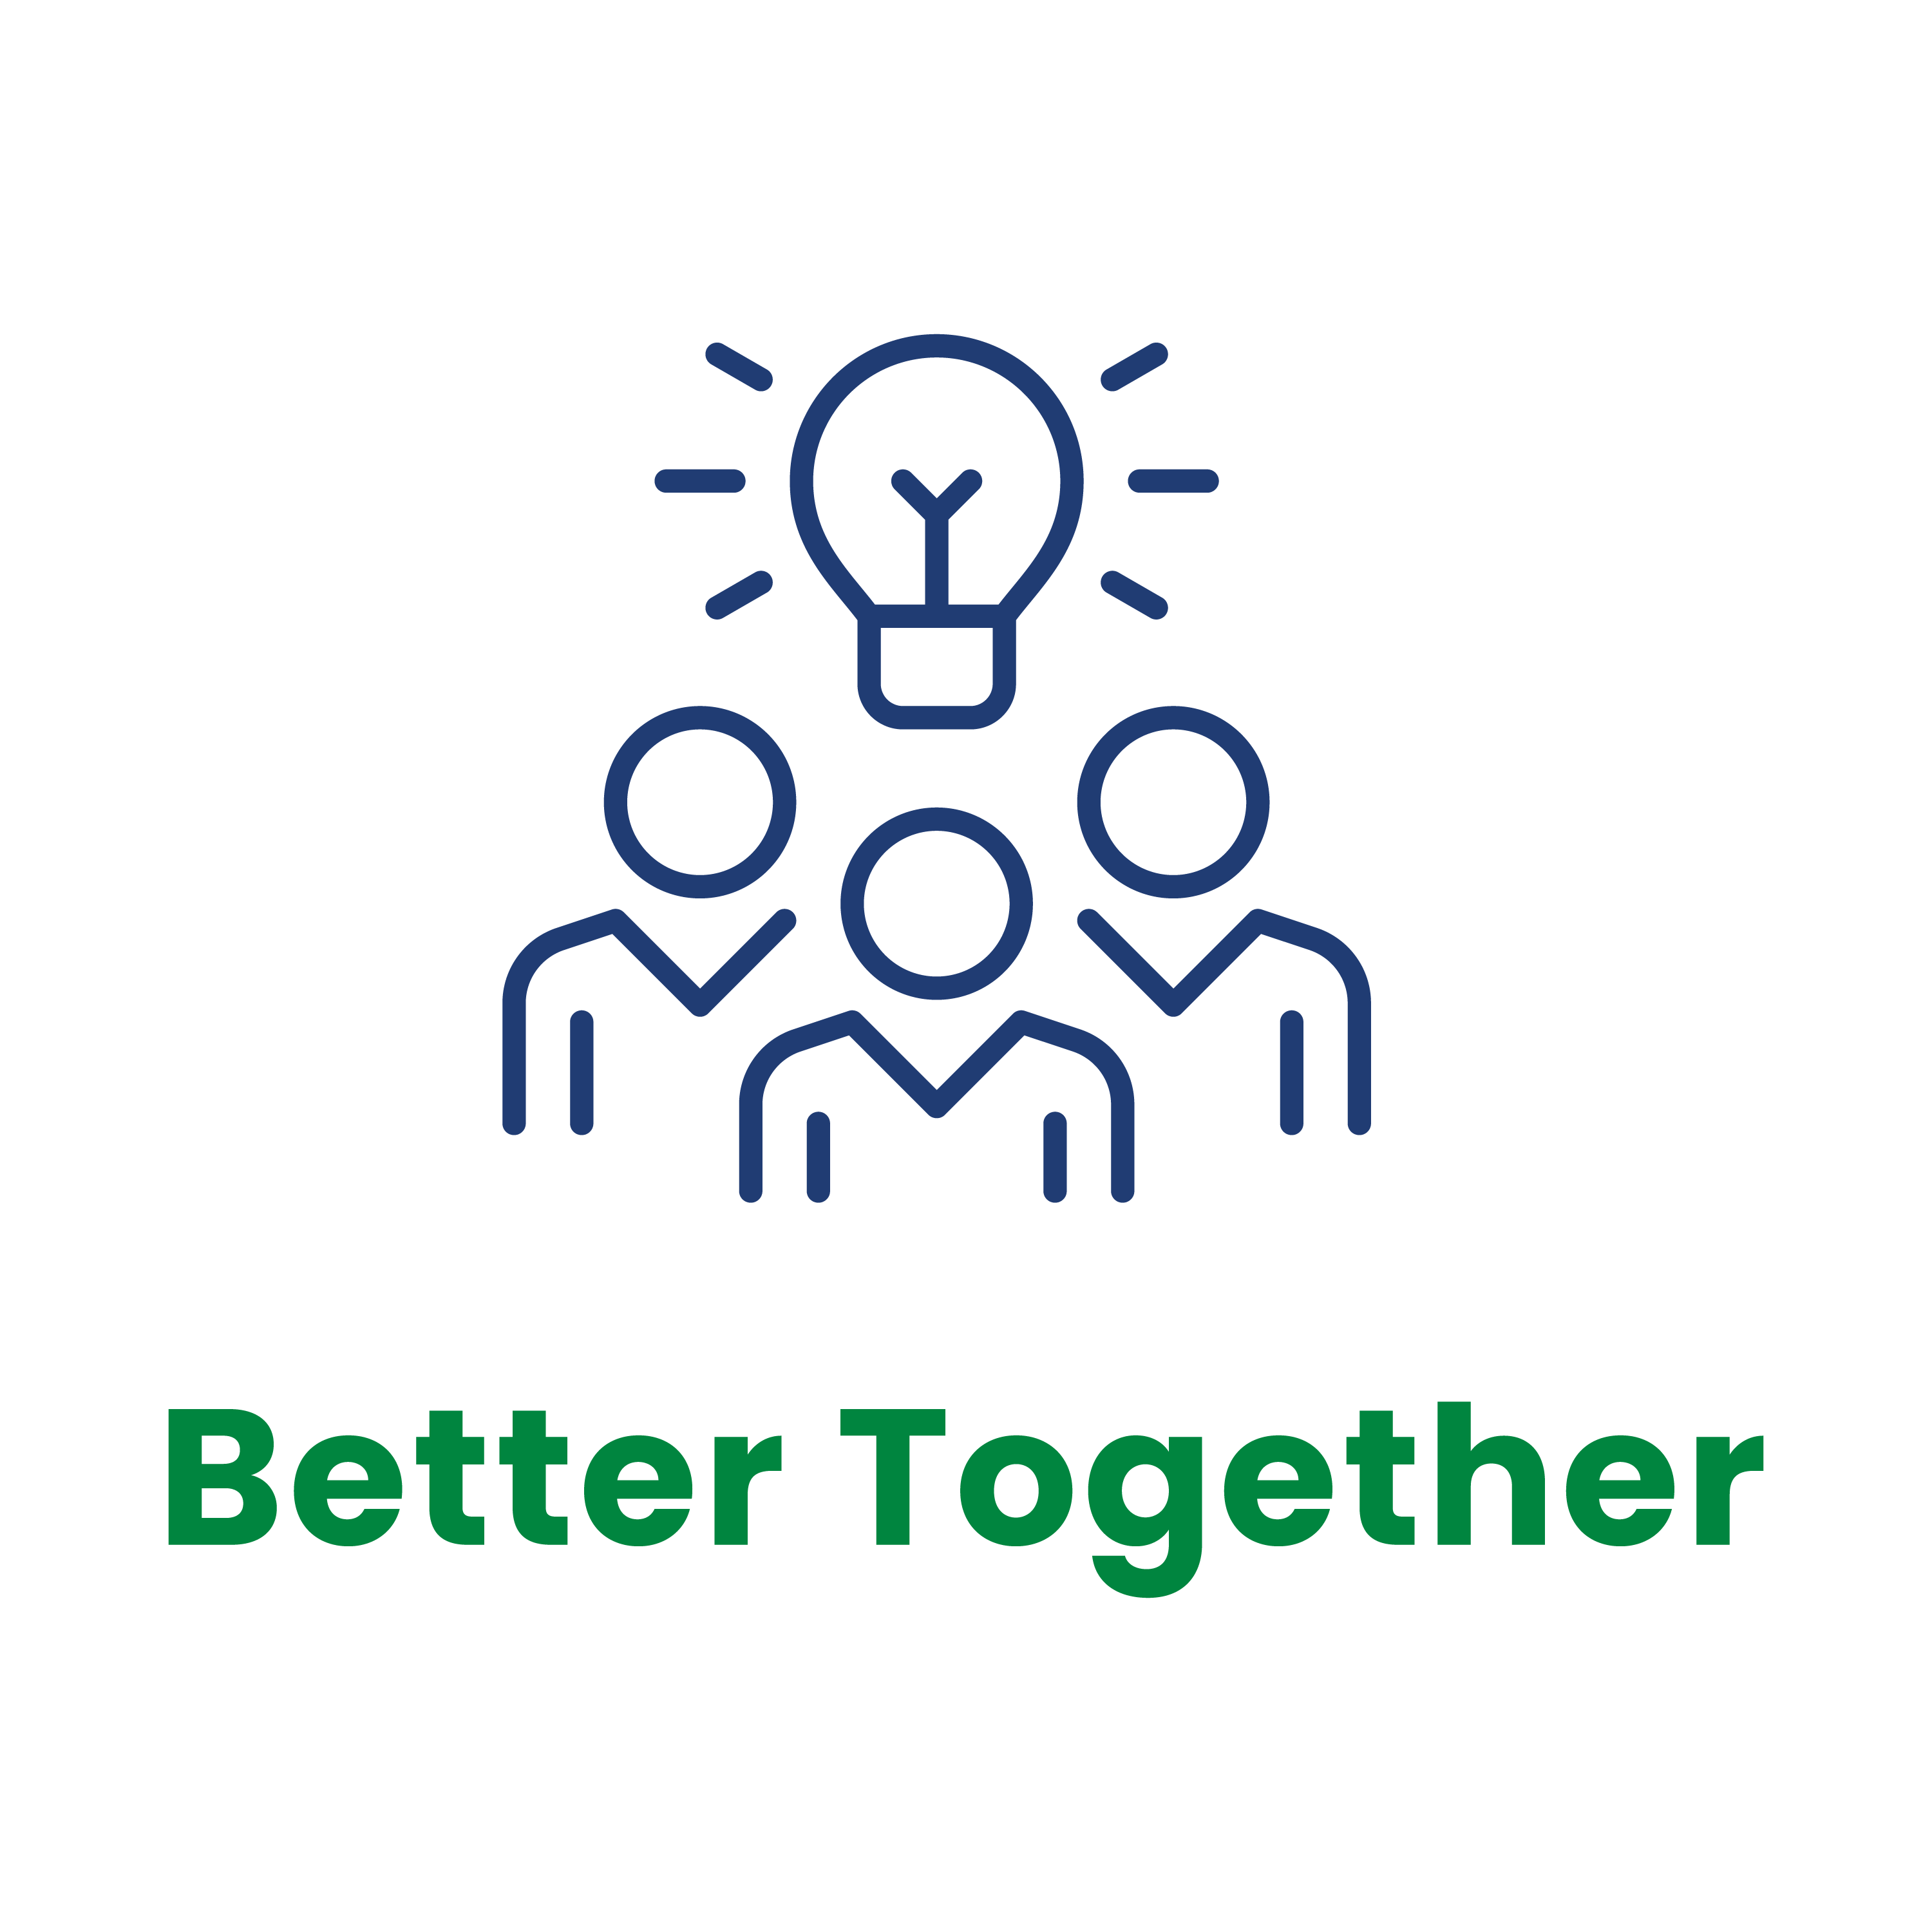 Values Logo - Better Together